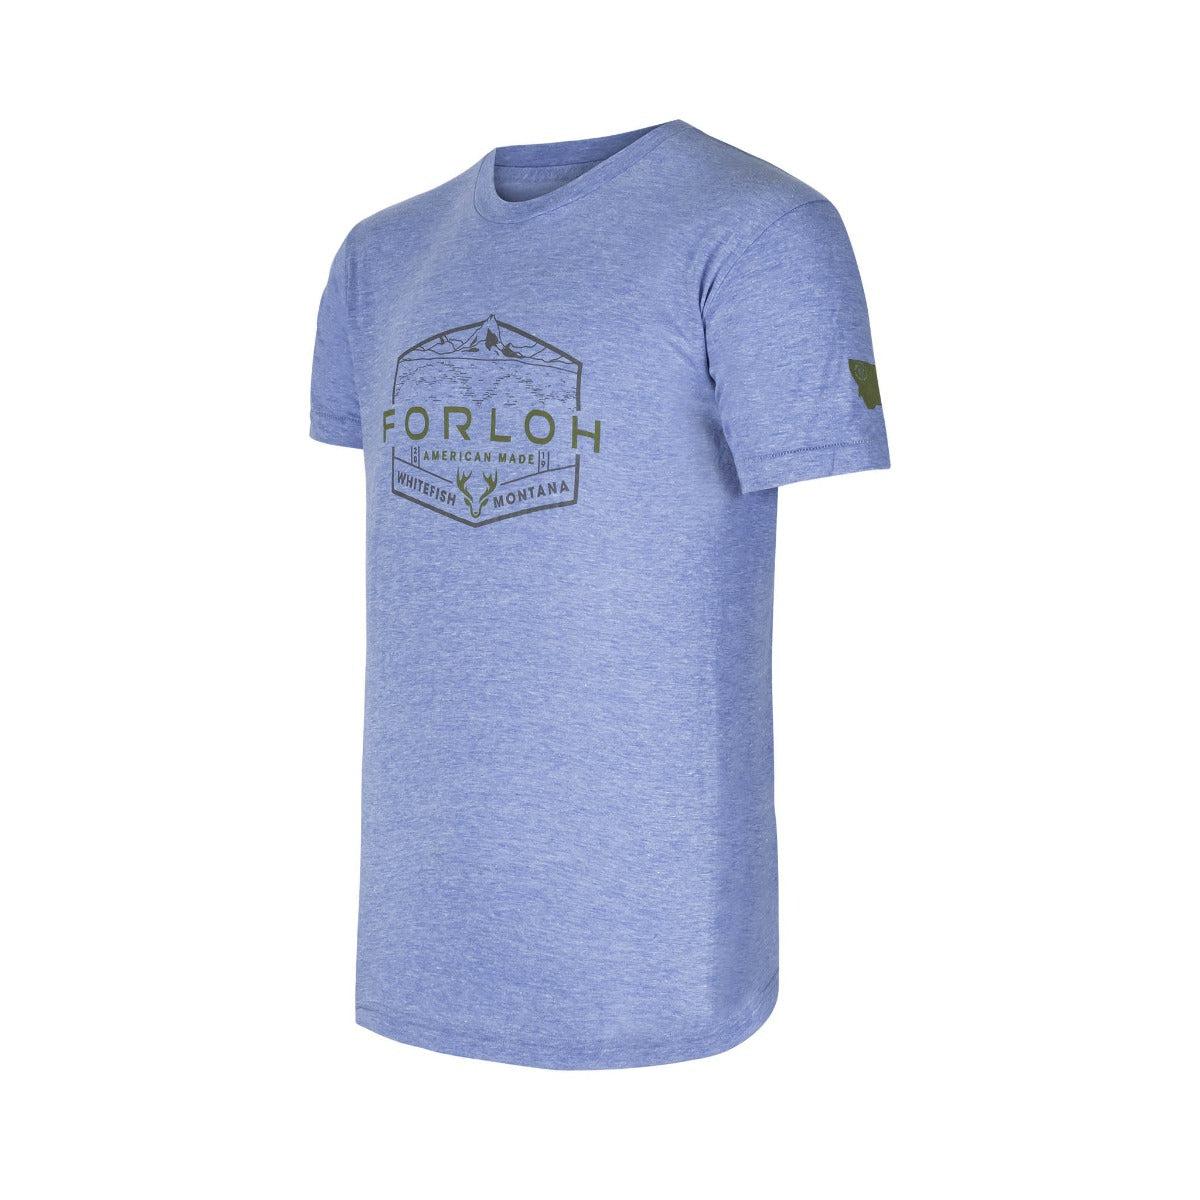 FORLOH Unisex Whitefish T-Shirt - FORLOH